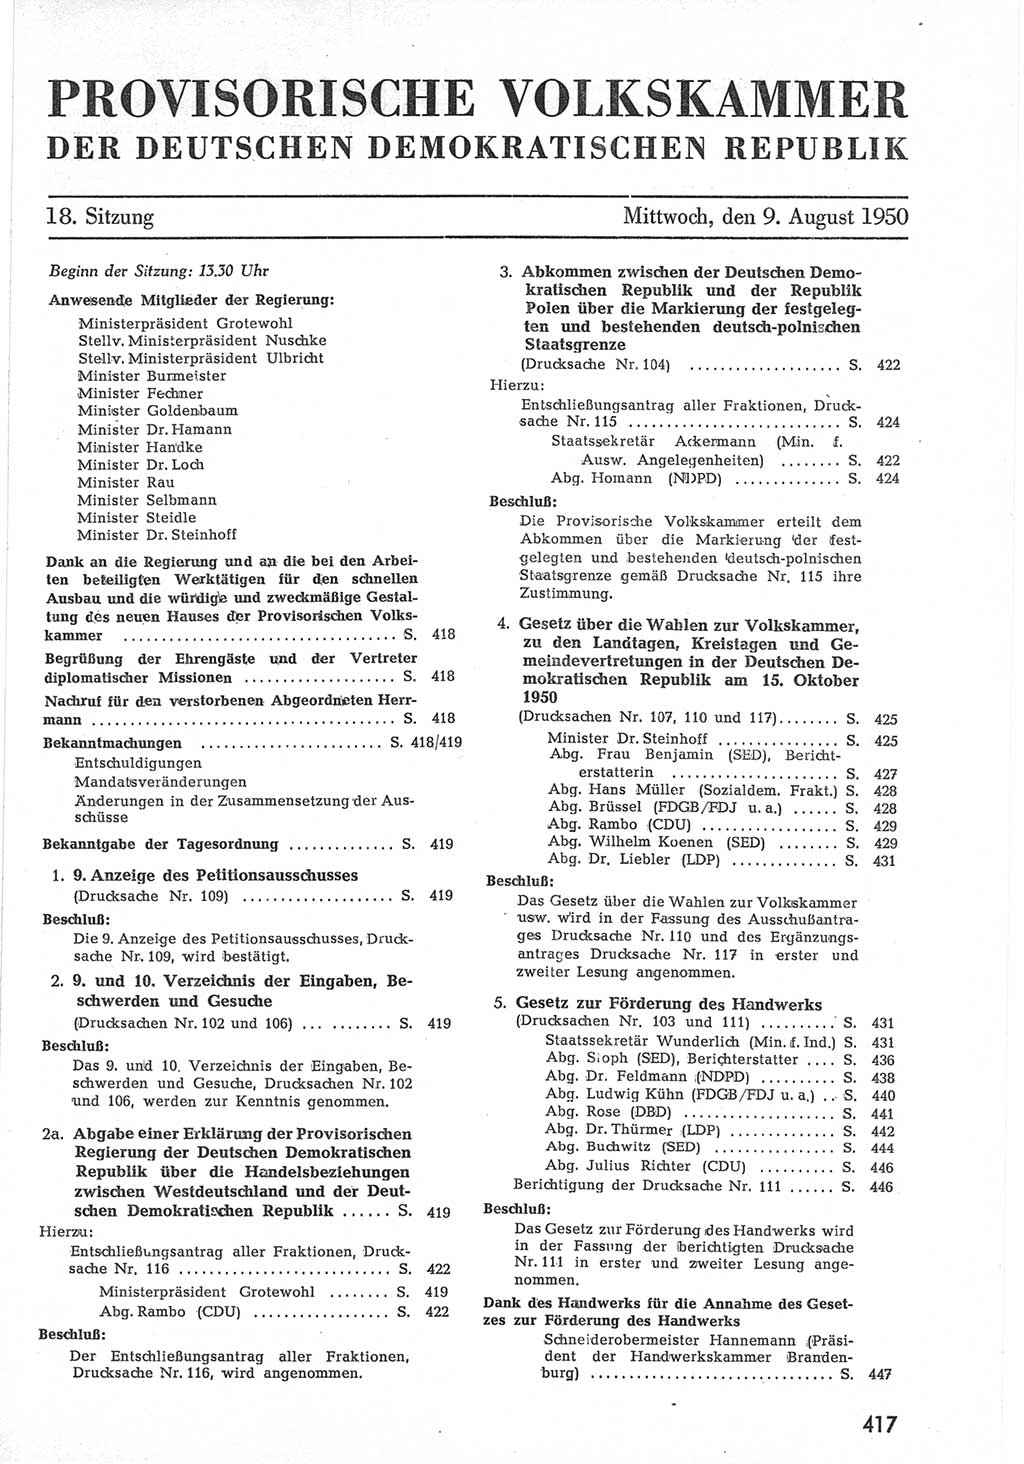 Provisorische Volkskammer (VK) der Deutschen Demokratischen Republik (DDR) 1949-1950, Dokument 435 (Prov. VK DDR 1949-1950, Dok. 435)